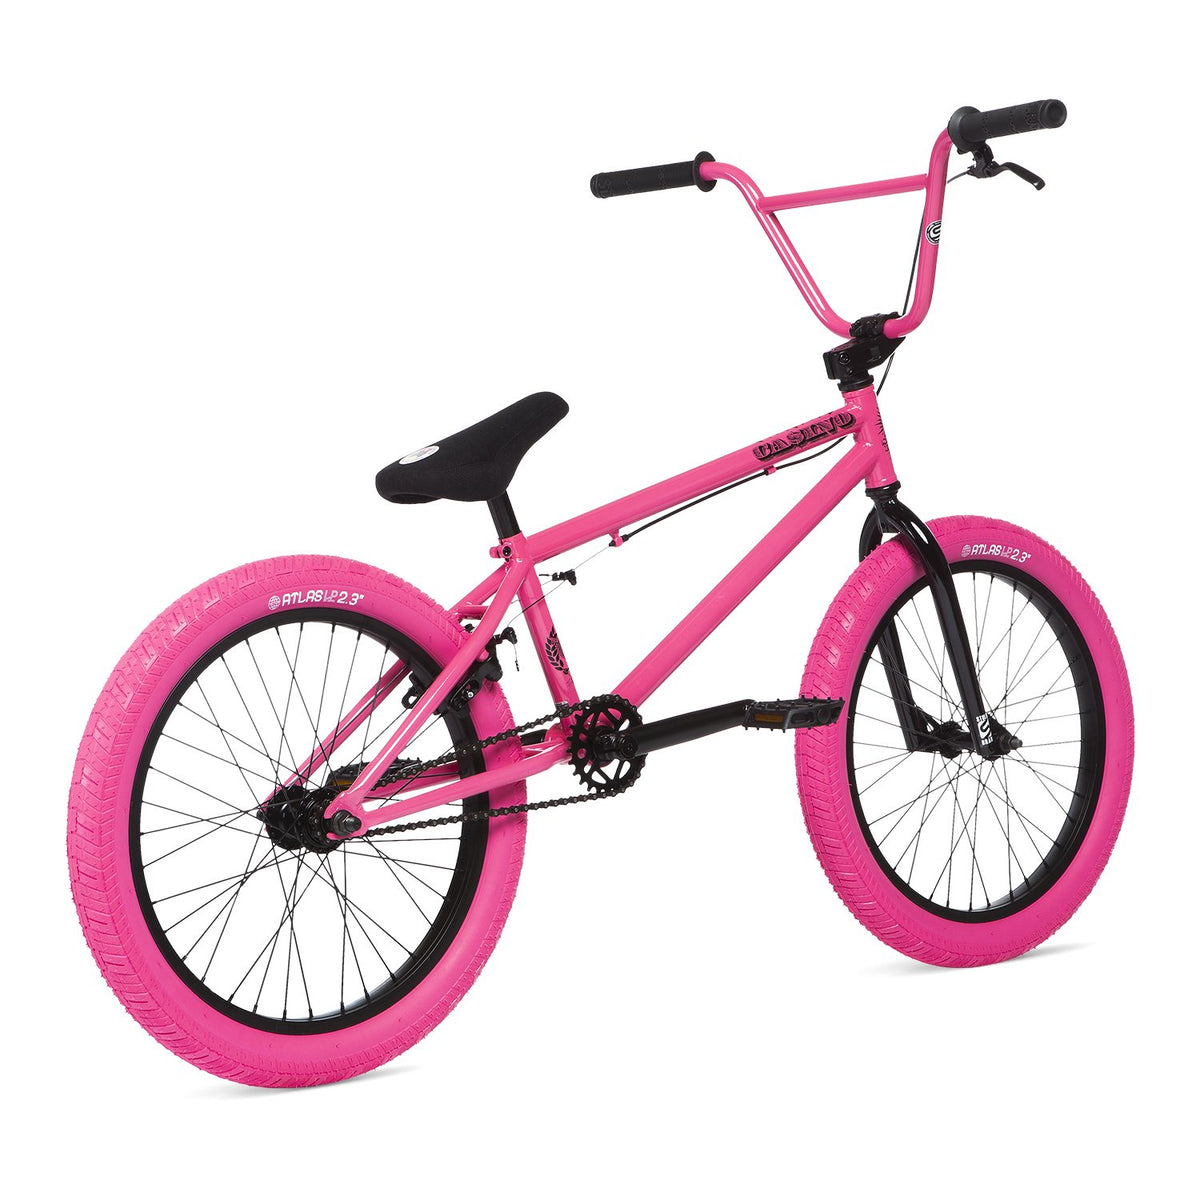 Розовый 20 2 цена. Велосипед BMX stolen. Велосипед бмх 20. Велосипед бмх stolen Casino. Бмх 20.25.